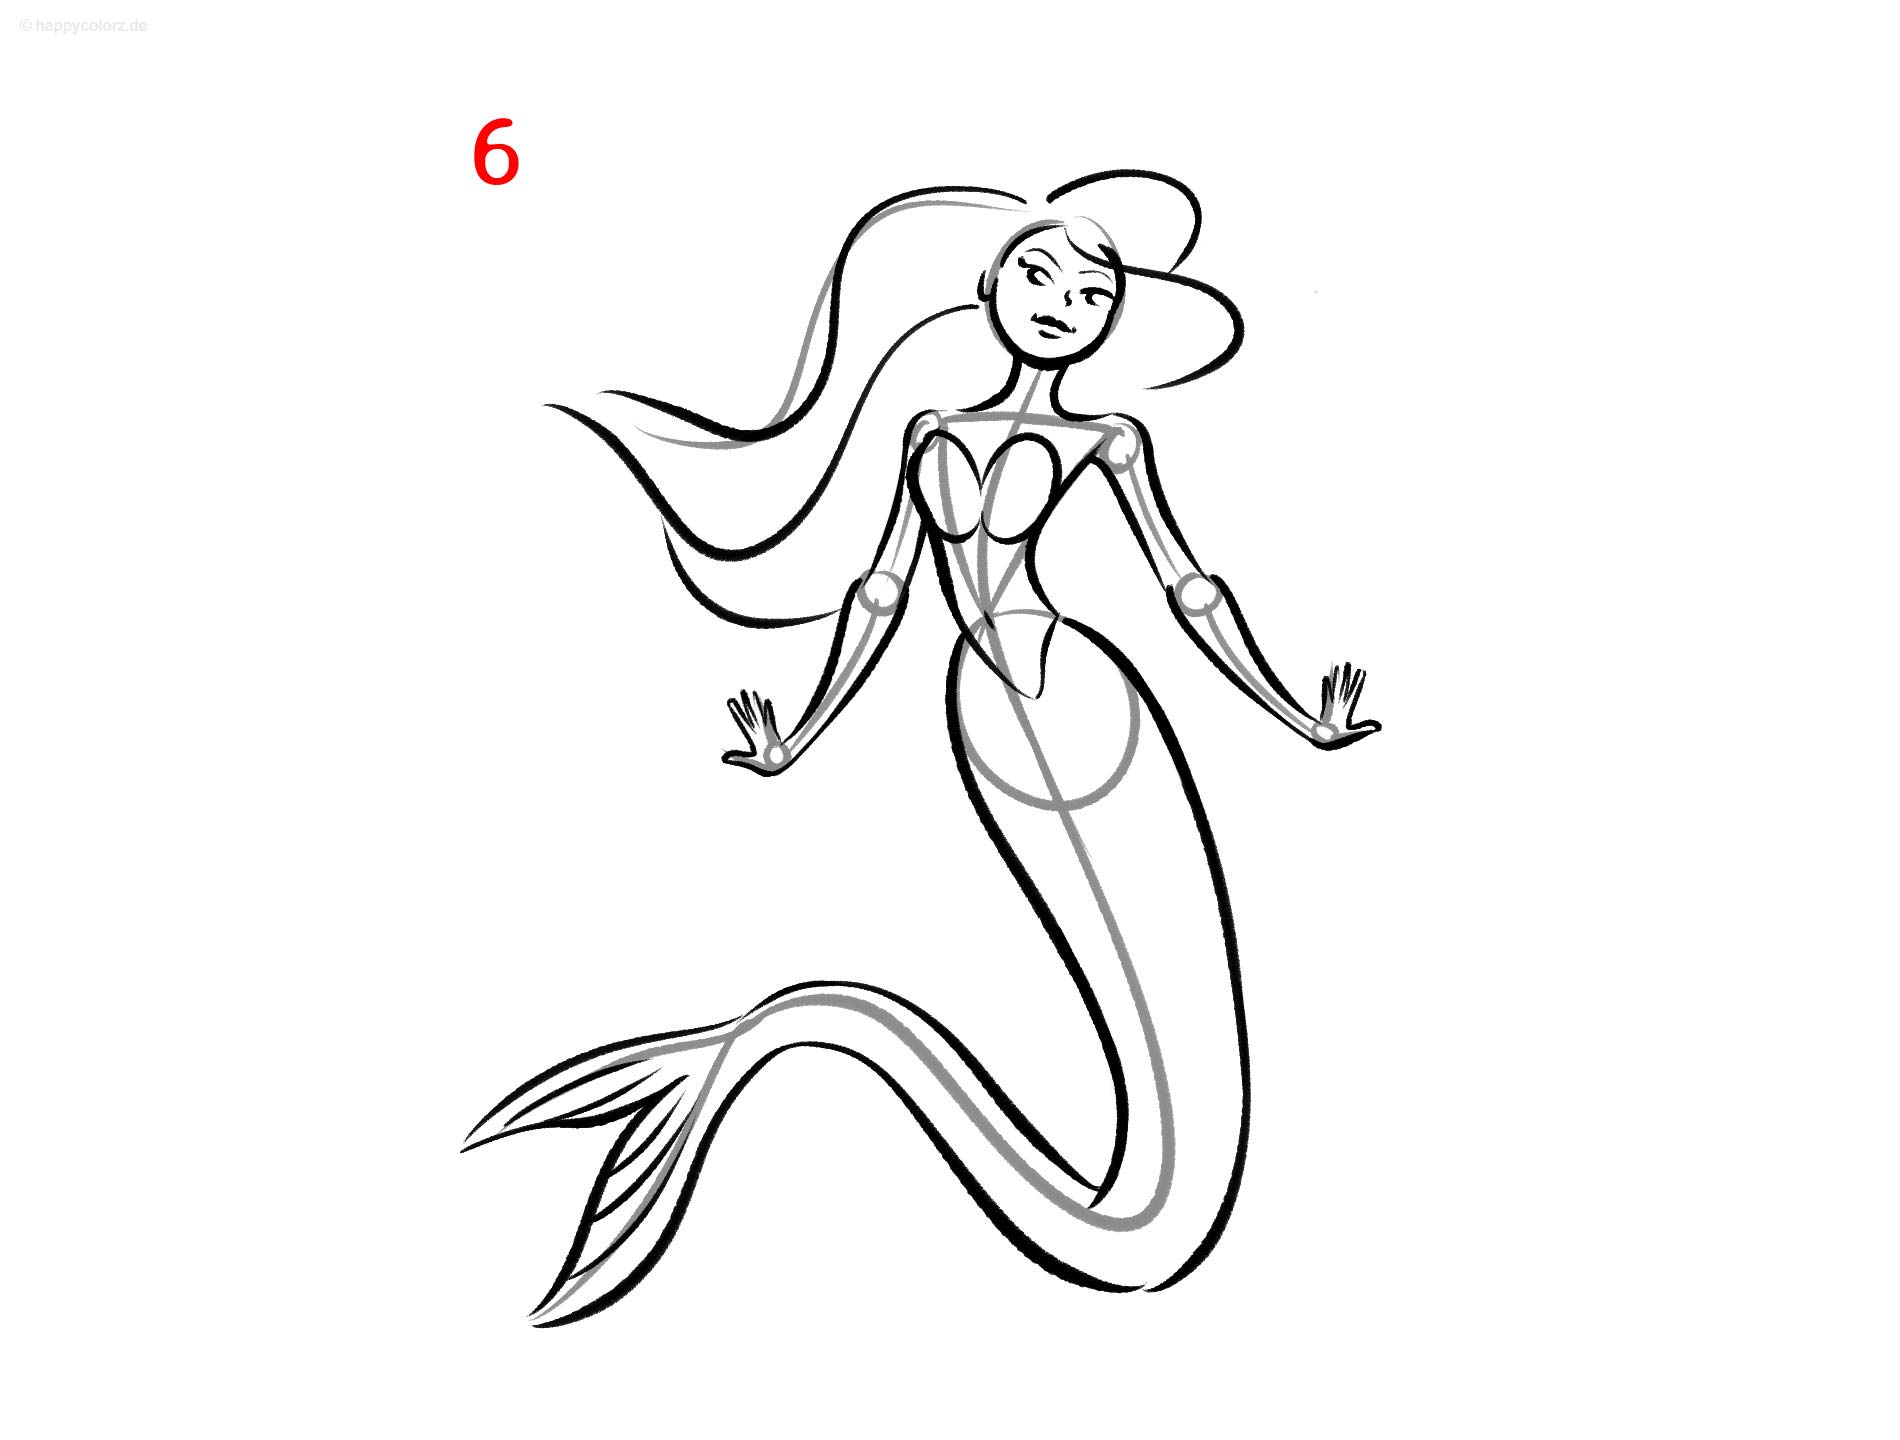 Meerjungfrau zeichnen - Schritt für Schritt